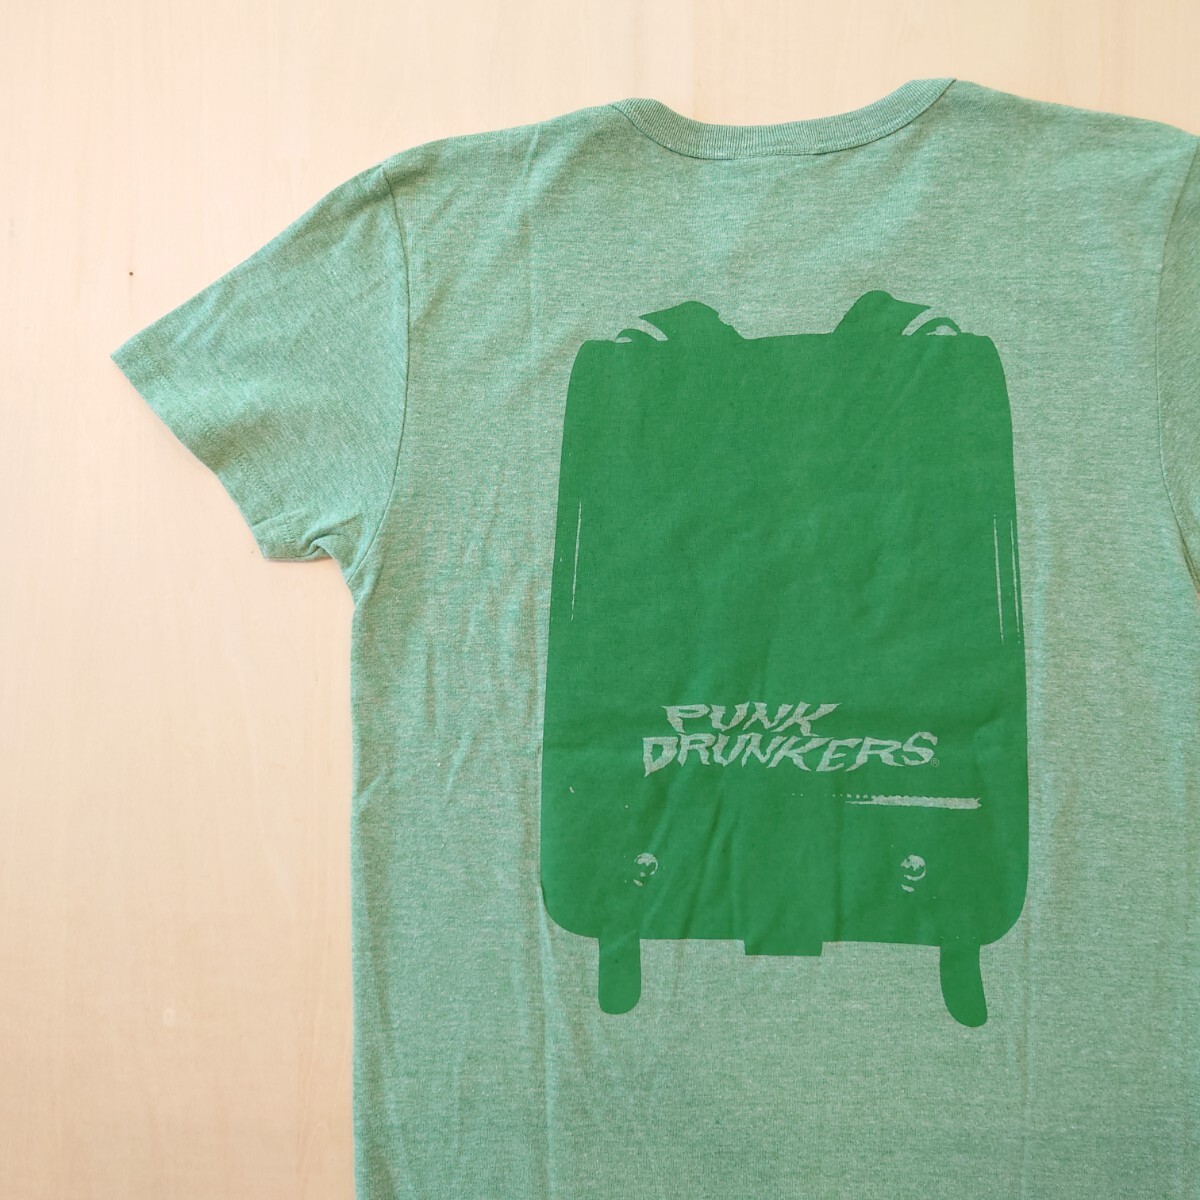 PUNK DRUNKERS Tシャツ 半袖 よくできました 未使用新品 パンクドランカーズ サイズS 2404